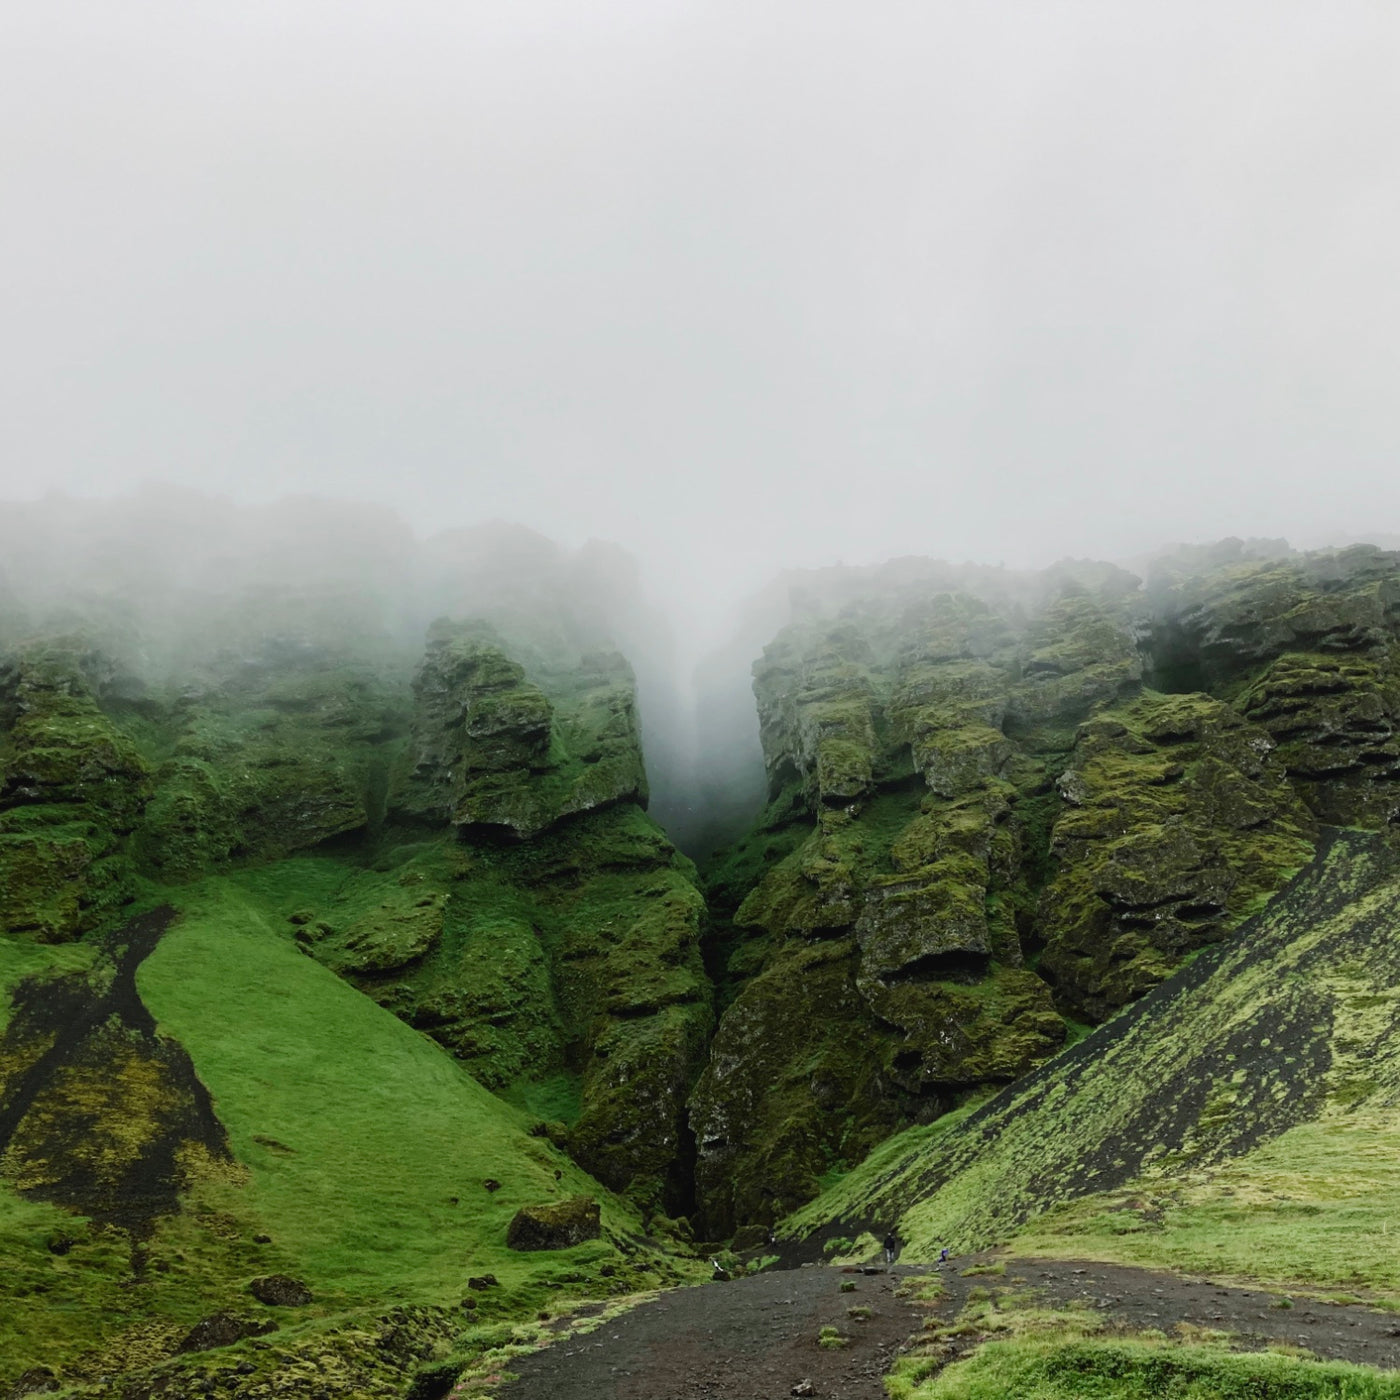 AMB46 Iceland: Quiet Nature